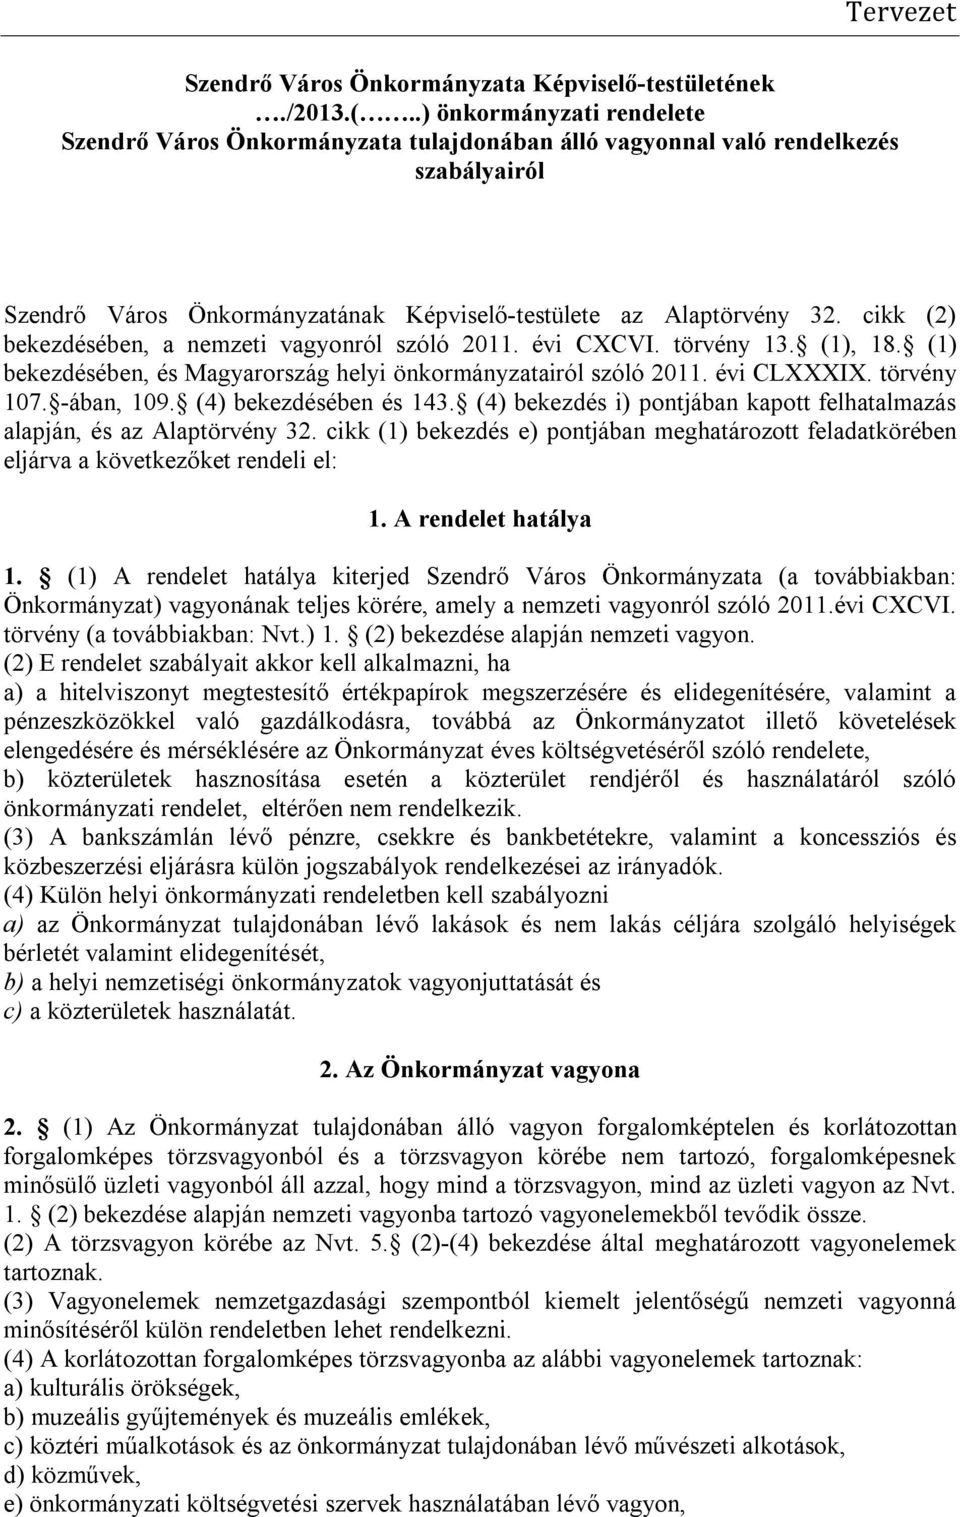 cikk (2) bekezdésében, a nemzeti vagyonról szóló 2011. évi CXCVI. törvény 13. (1), 18. (1) bekezdésében, és Magyarország helyi önkormányzatairól szóló 2011. évi CLXXXIX. törvény 107. -ában, 109.